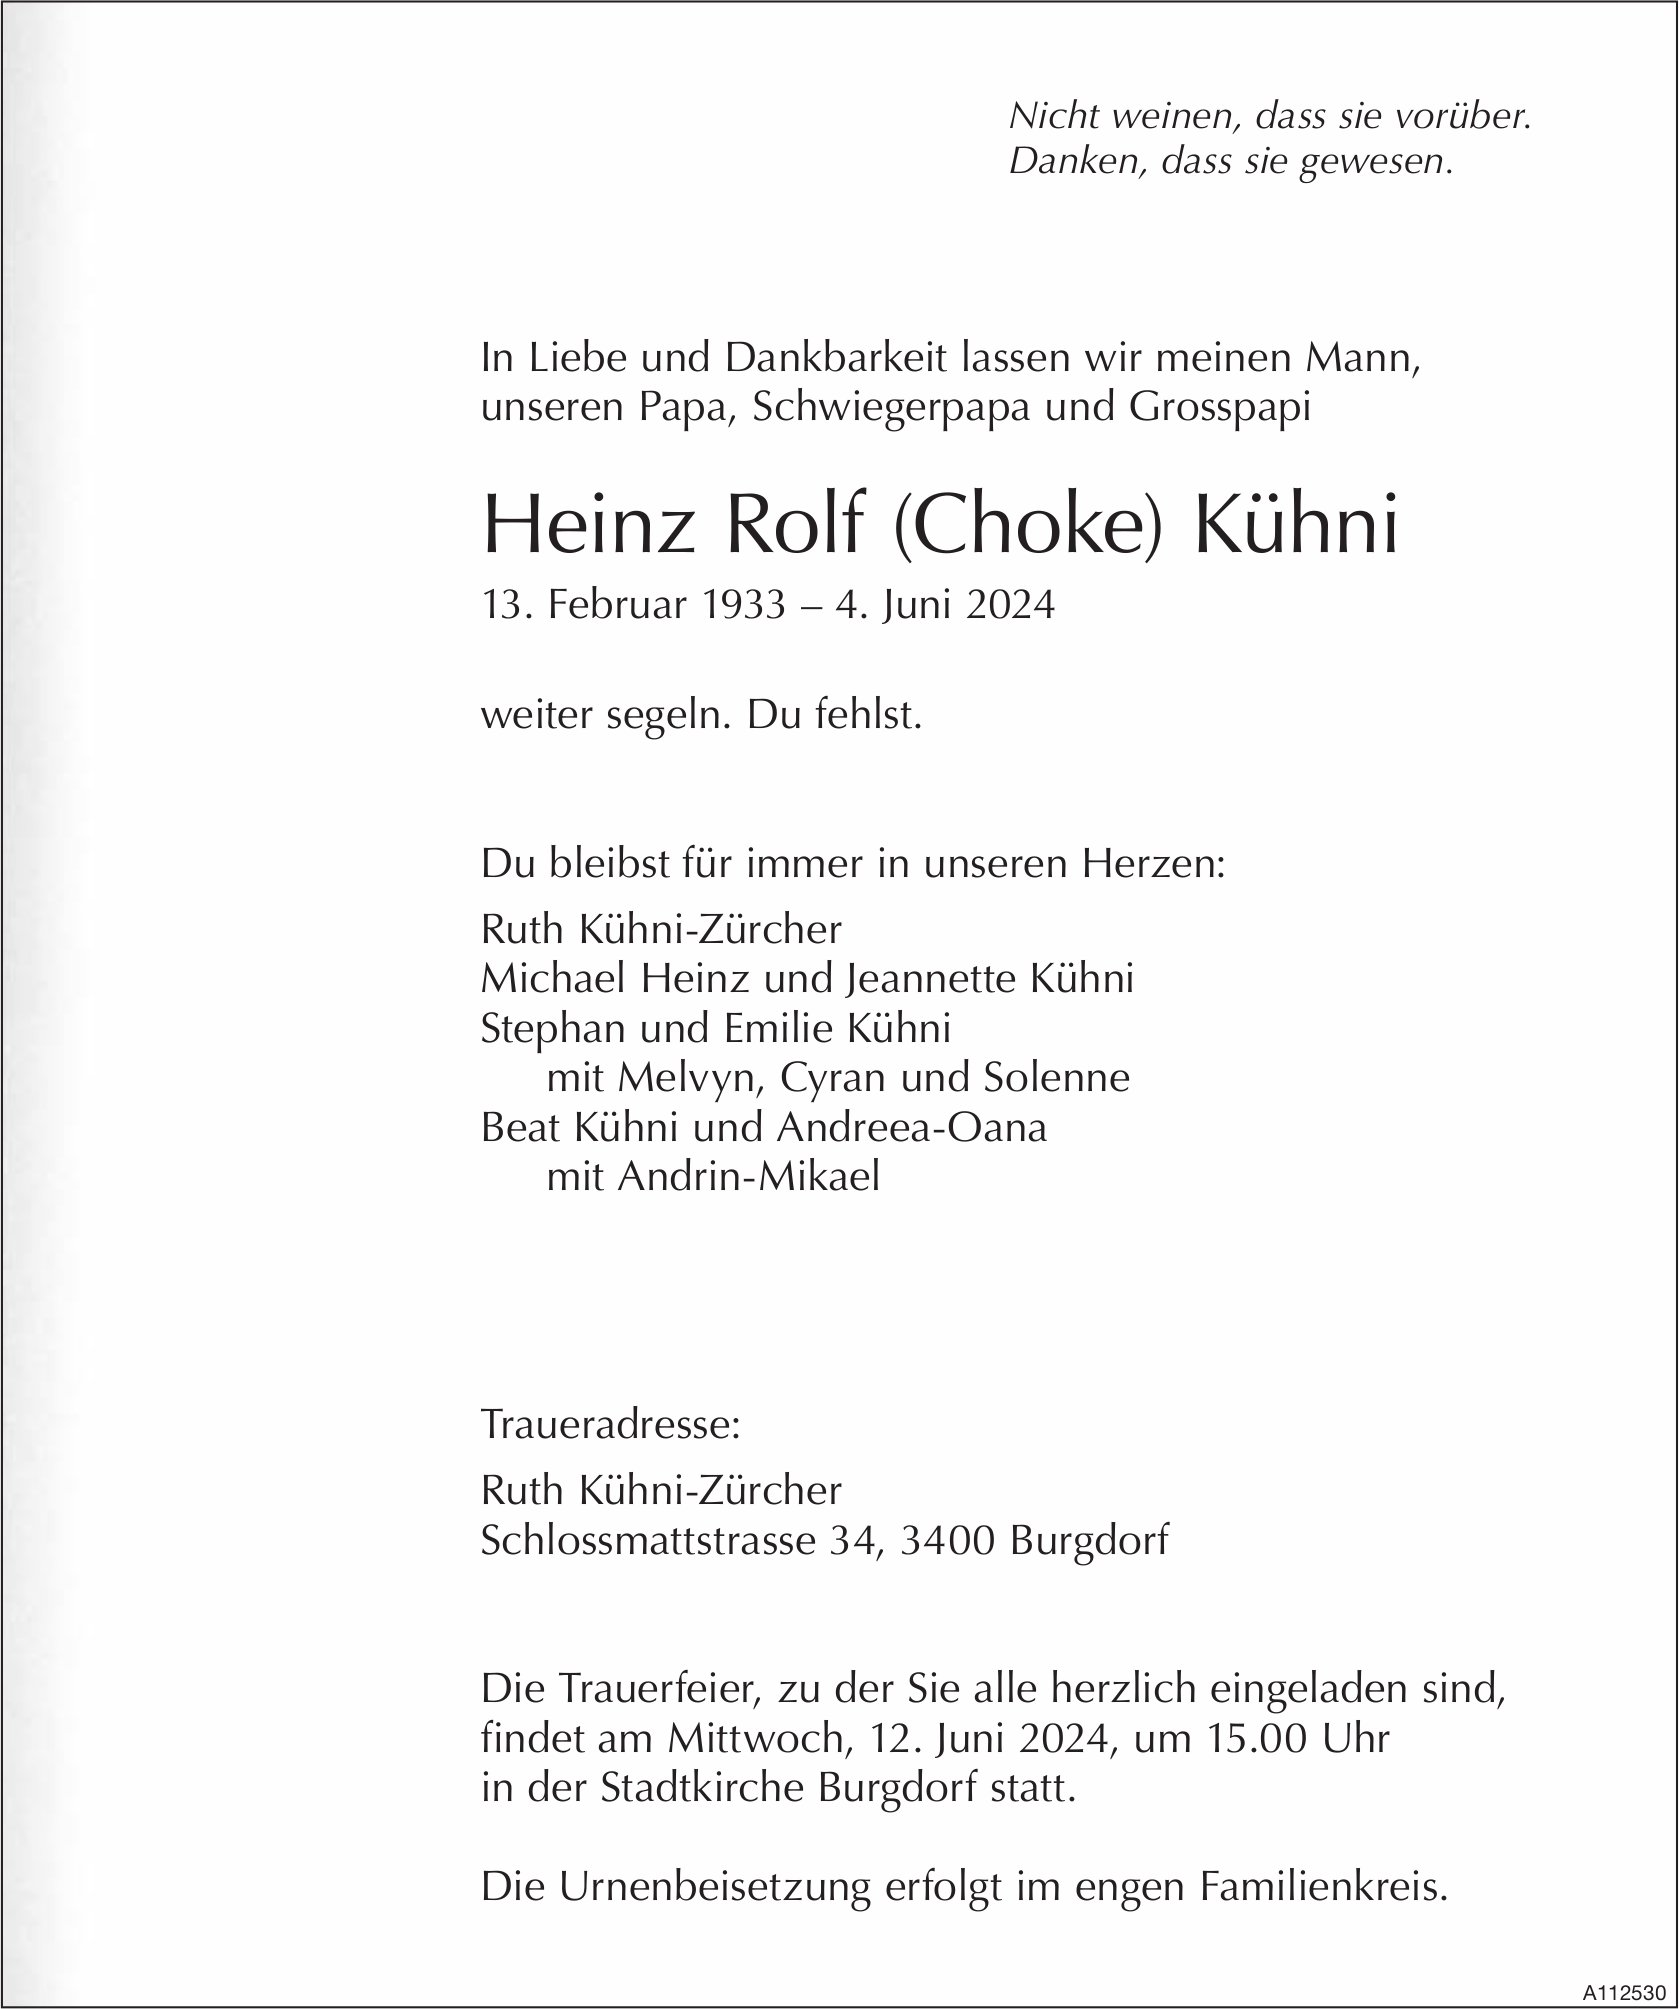 Heinz Rolf (Choke) Kühni, Juni 2024 / TA